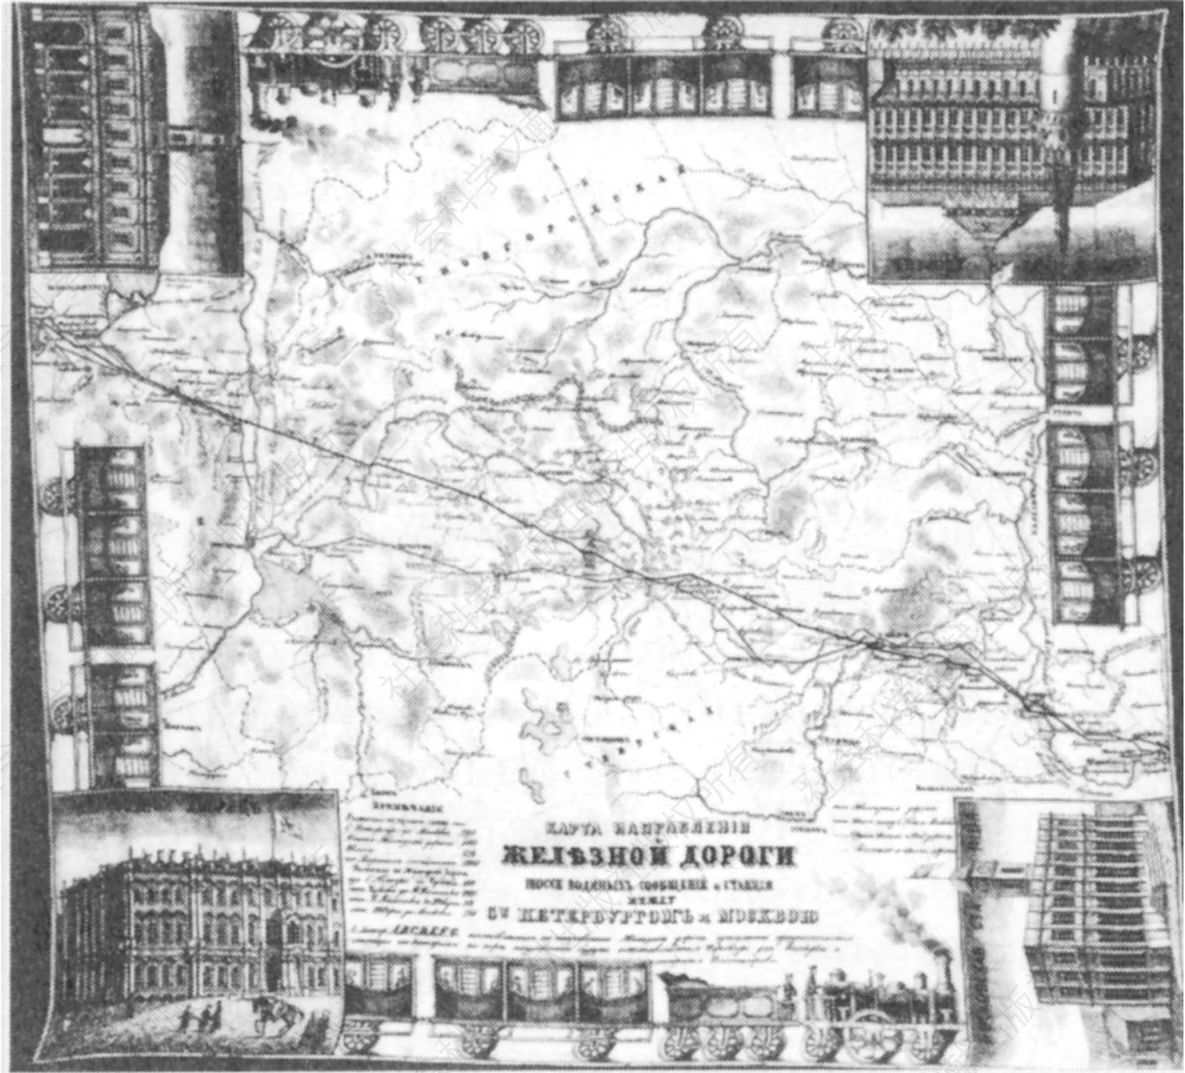 图4-3 20世纪初手帕图案中的尼古拉耶夫铁路